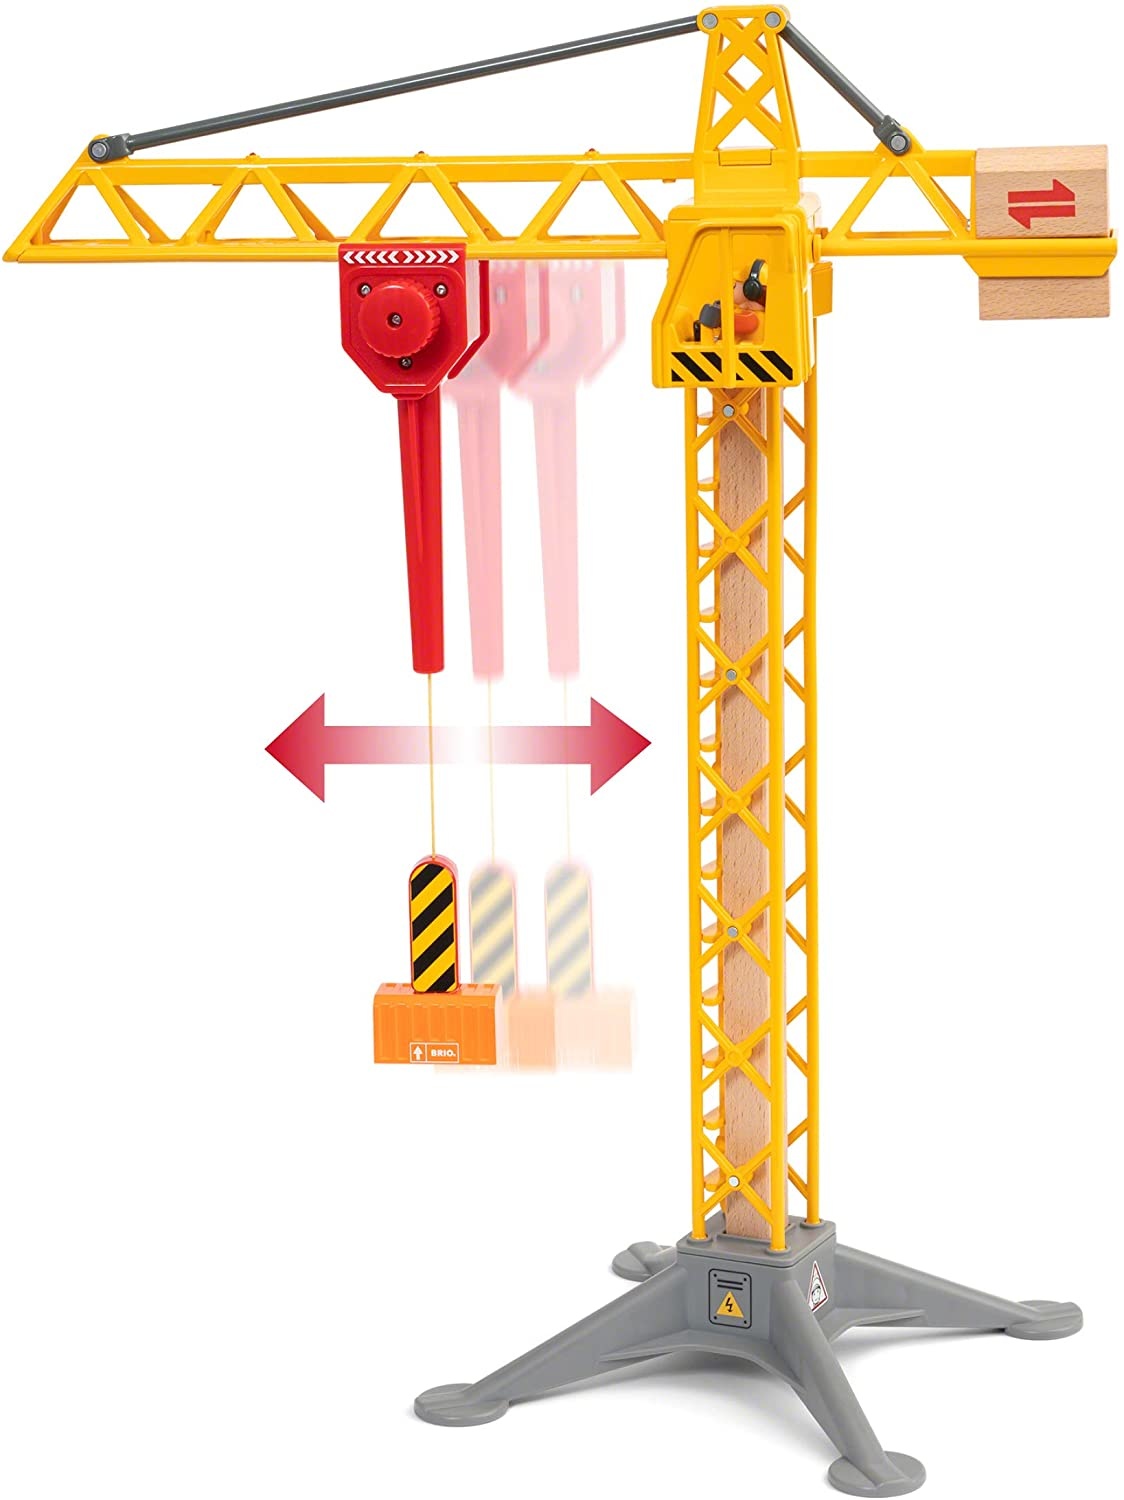 BRIO Light Up Construction Crane